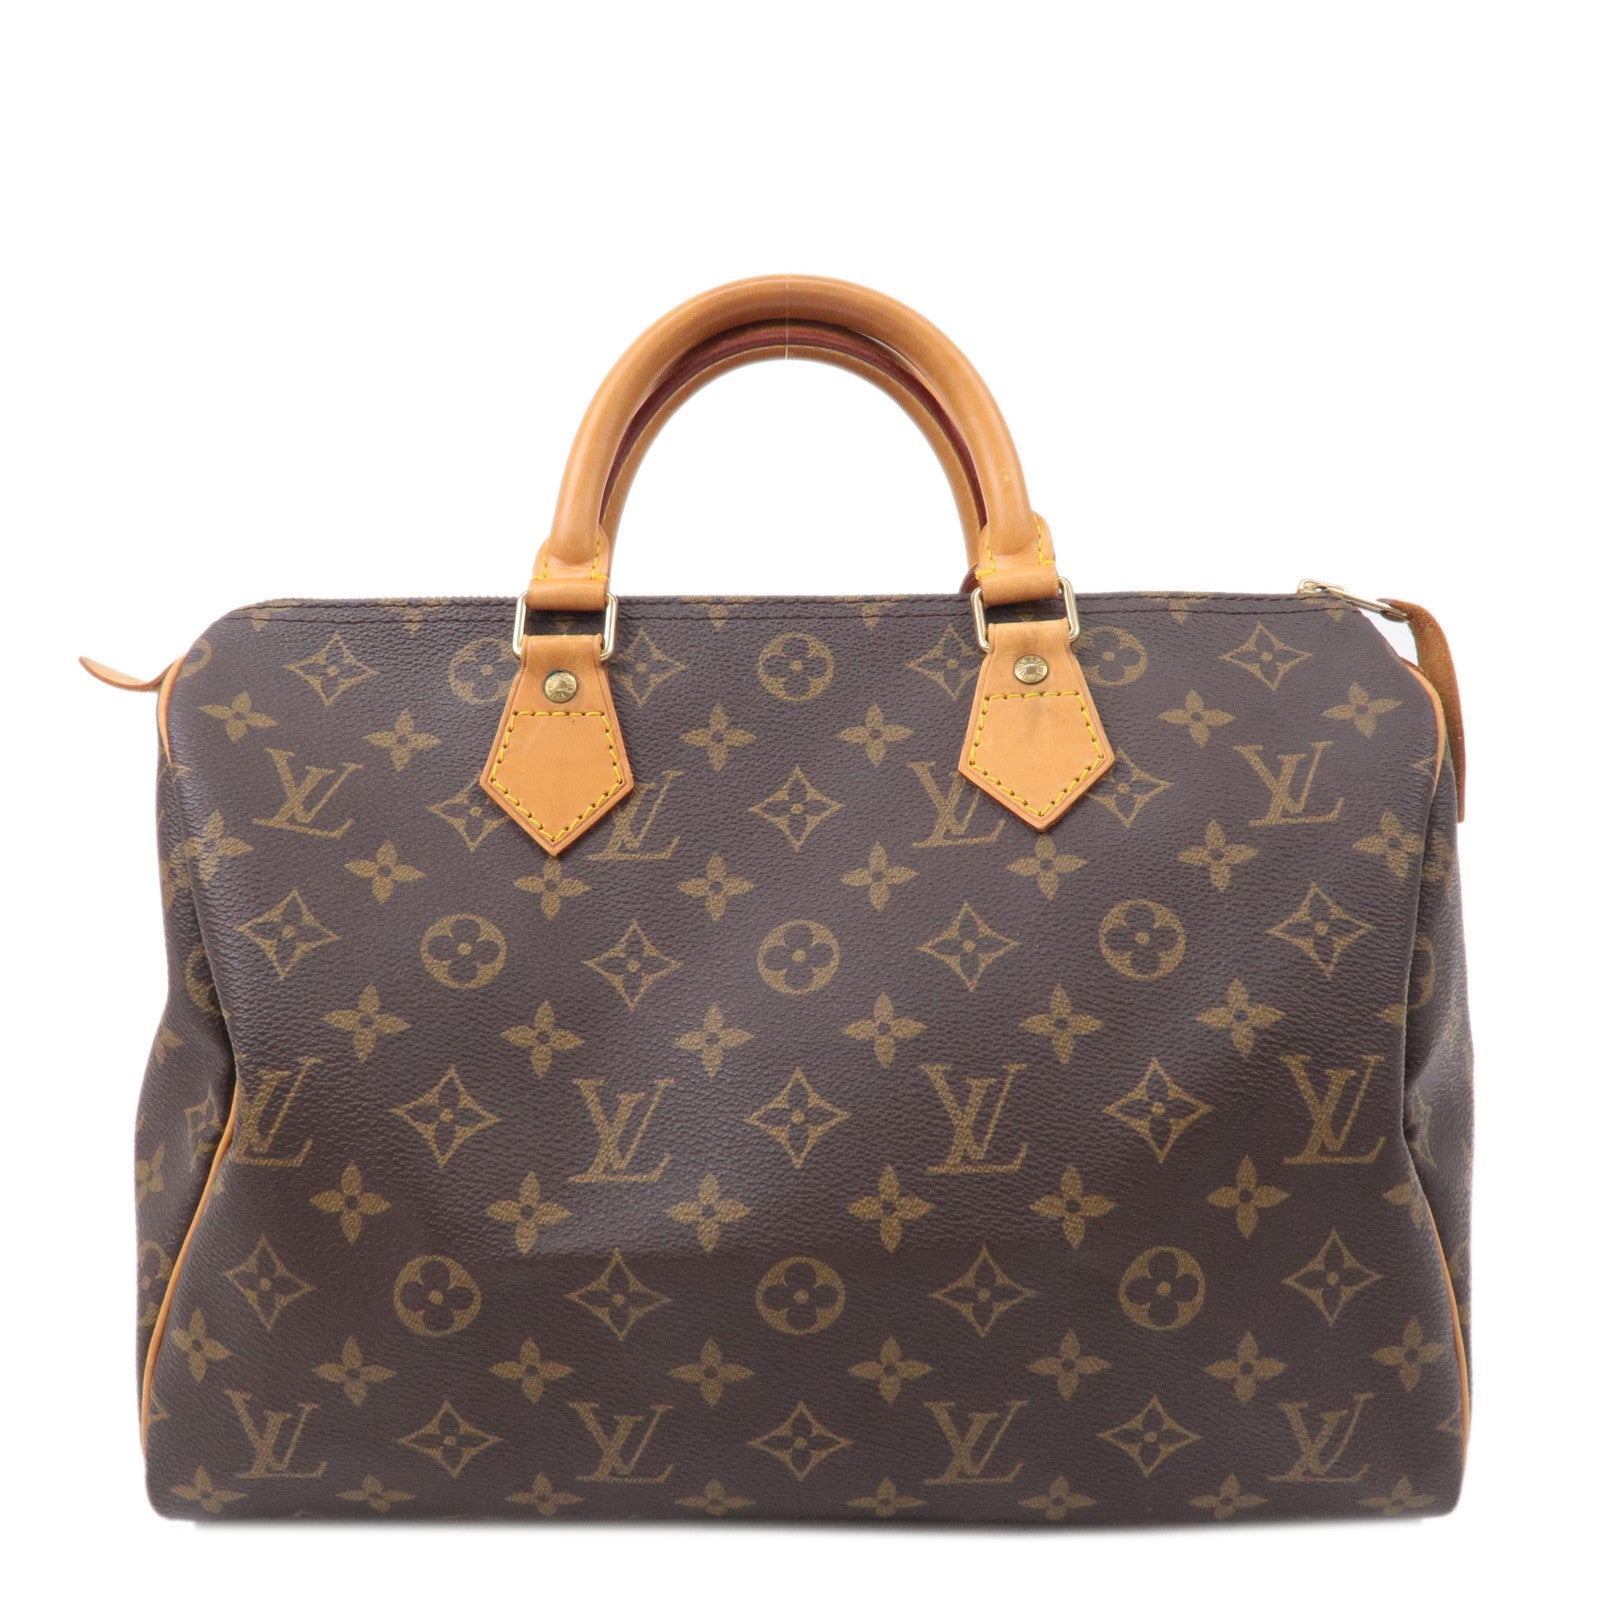 Louis Vuitton - Speedy 30 - Monogram - Brown - Women - Handbag - Luxury